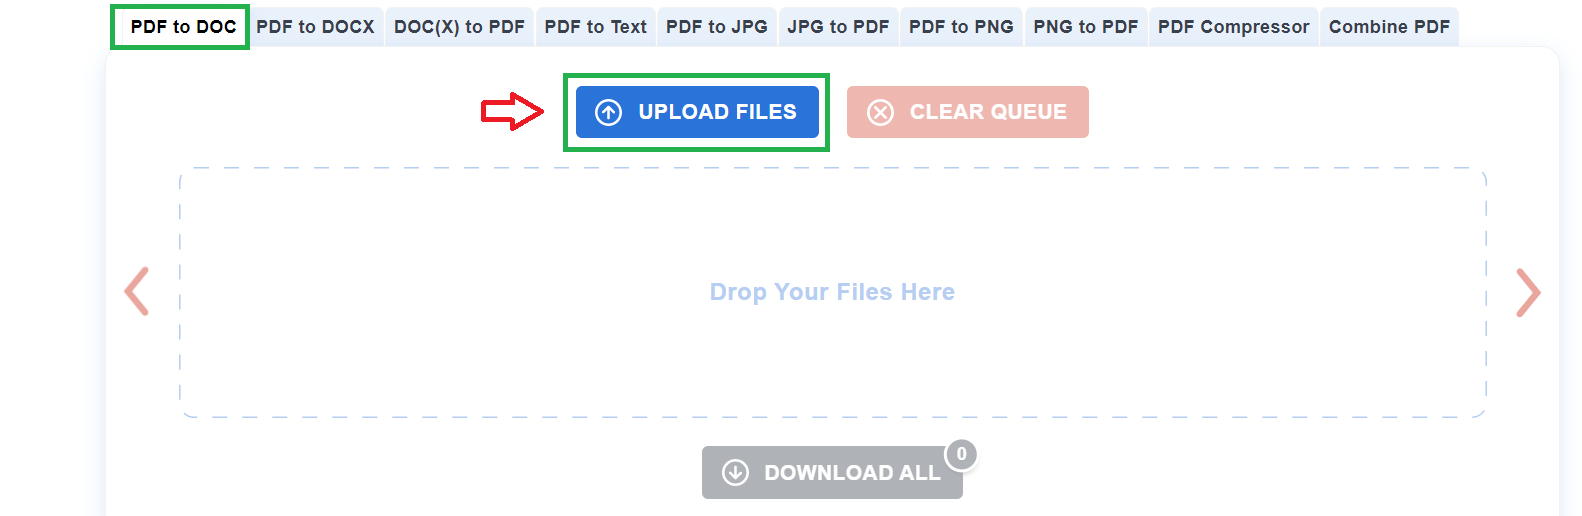 Cách chuyển file PDF sang WORD